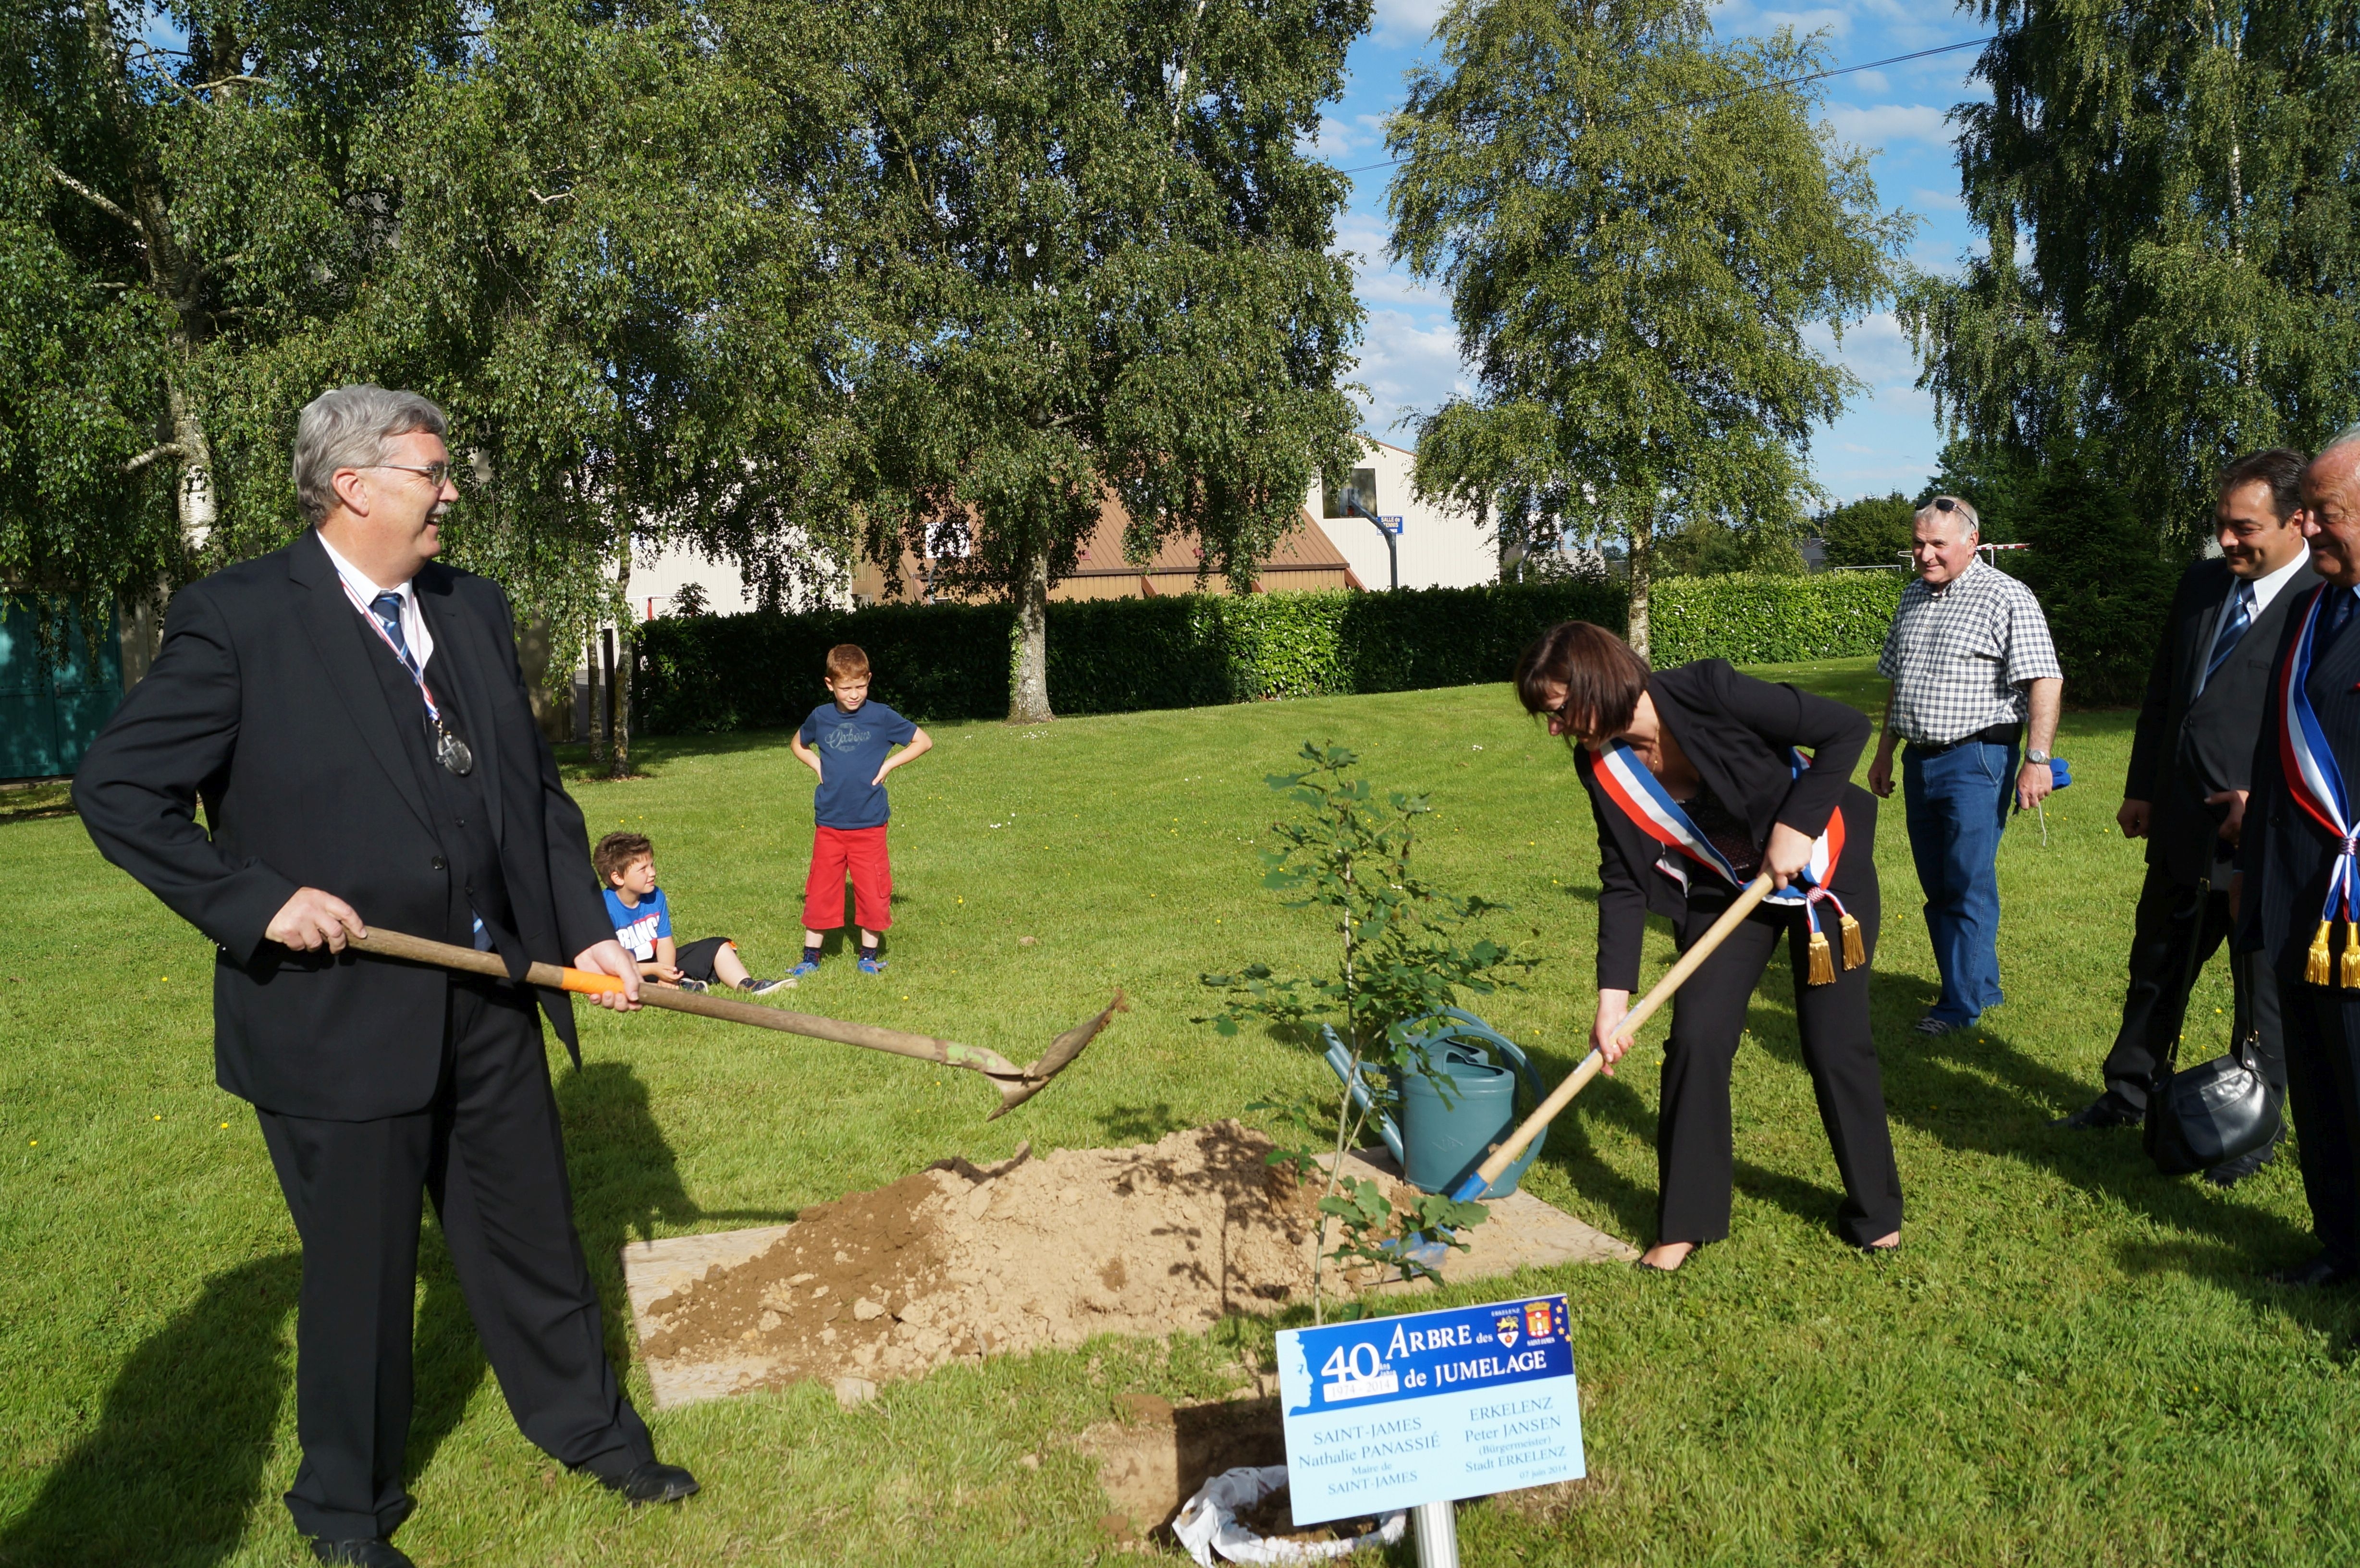 Bürgermeister Peter Jansen pflanzt mit der Bürgermeisterin von Saint-James einen Baum anlässlich des 40-jährigen Bestehens der Städtepartnerschaft